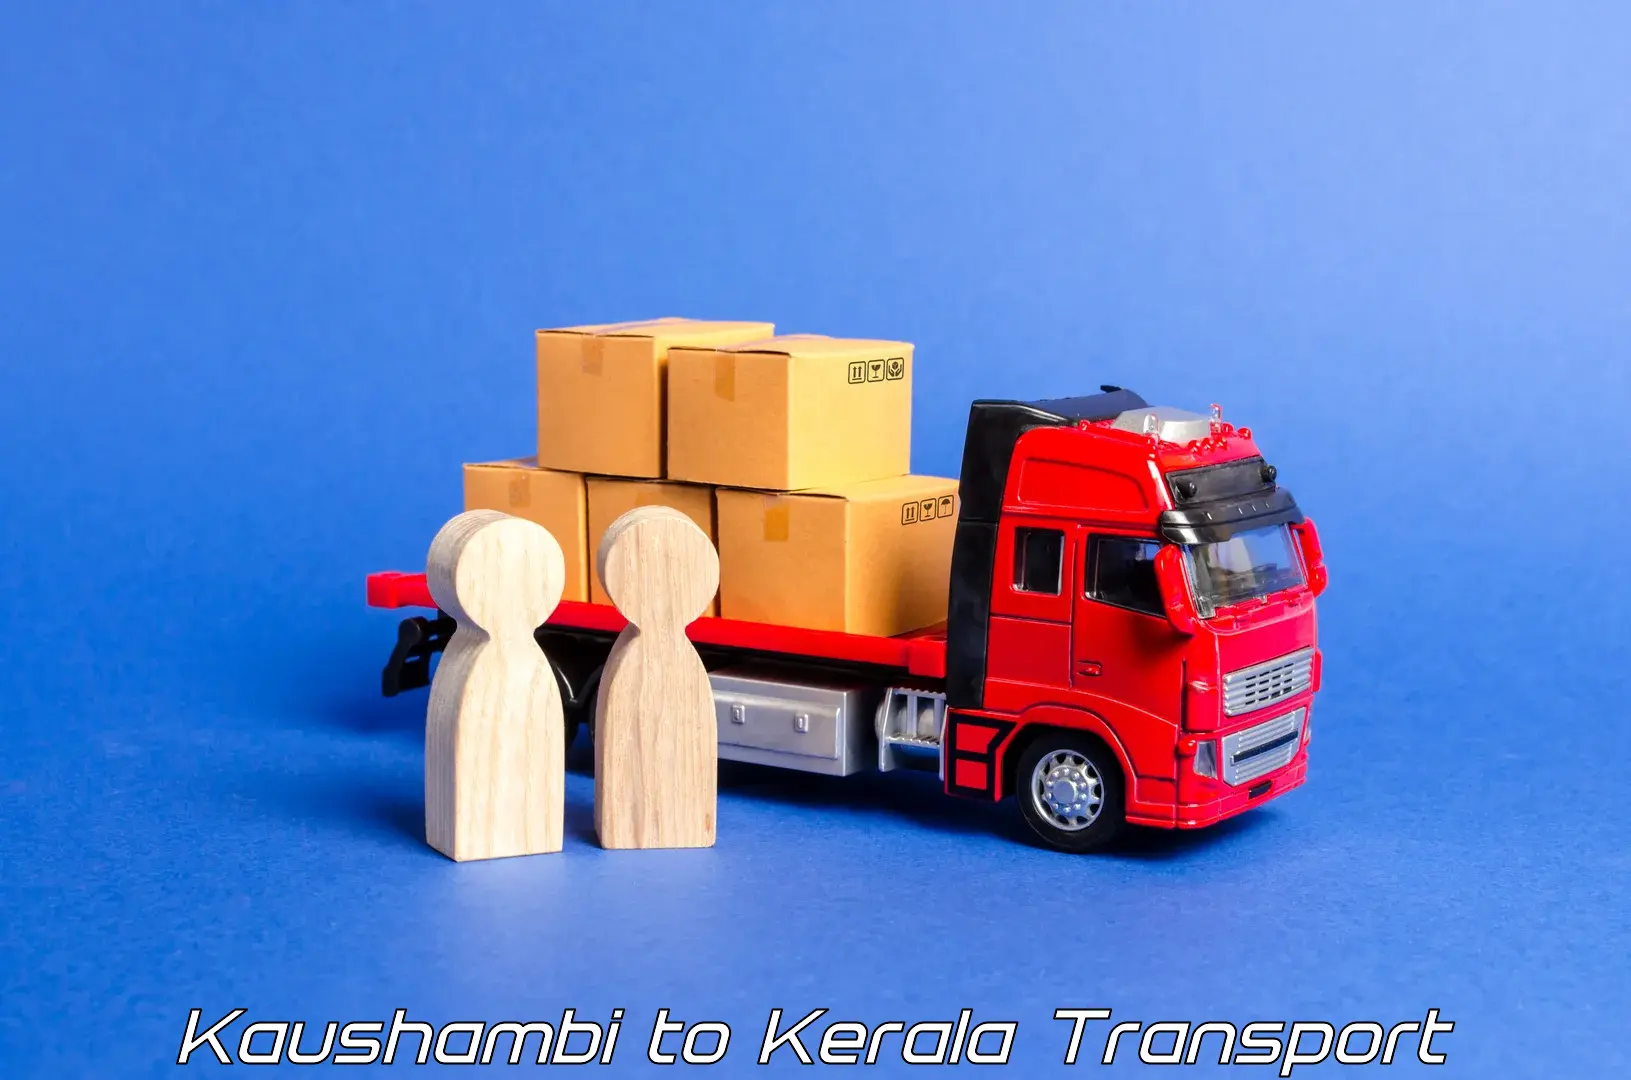 Scooty transport charges Kaushambi to Pathanamthitta